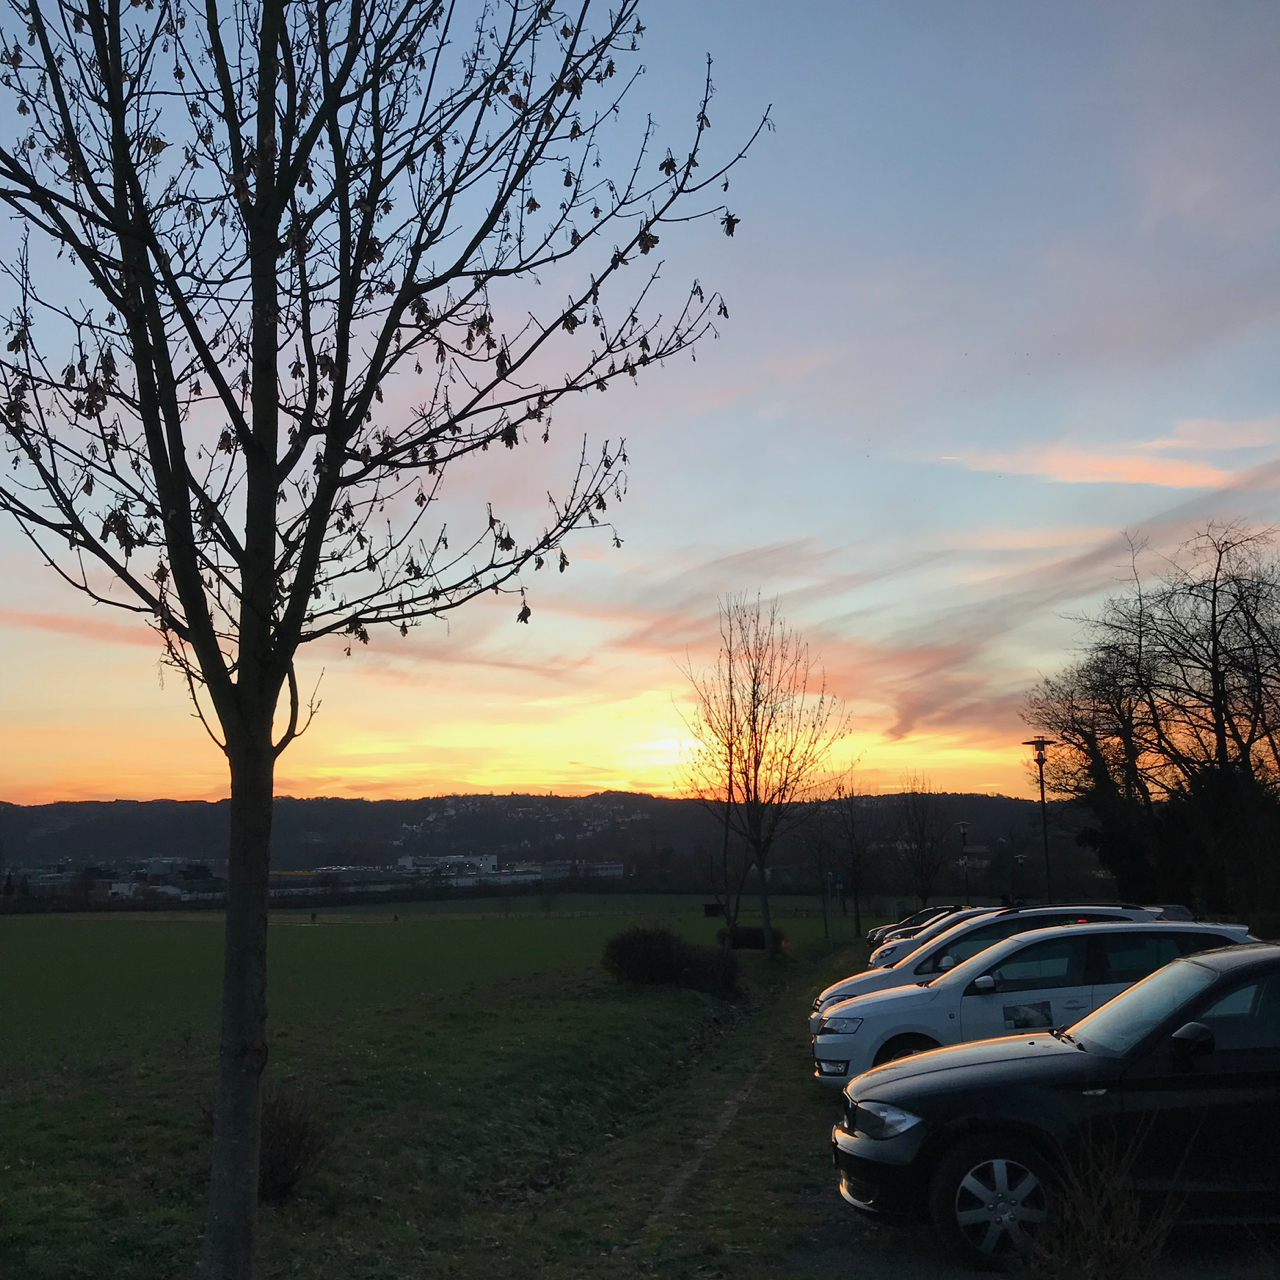 Sonnenuntergang mit Baum und Autos